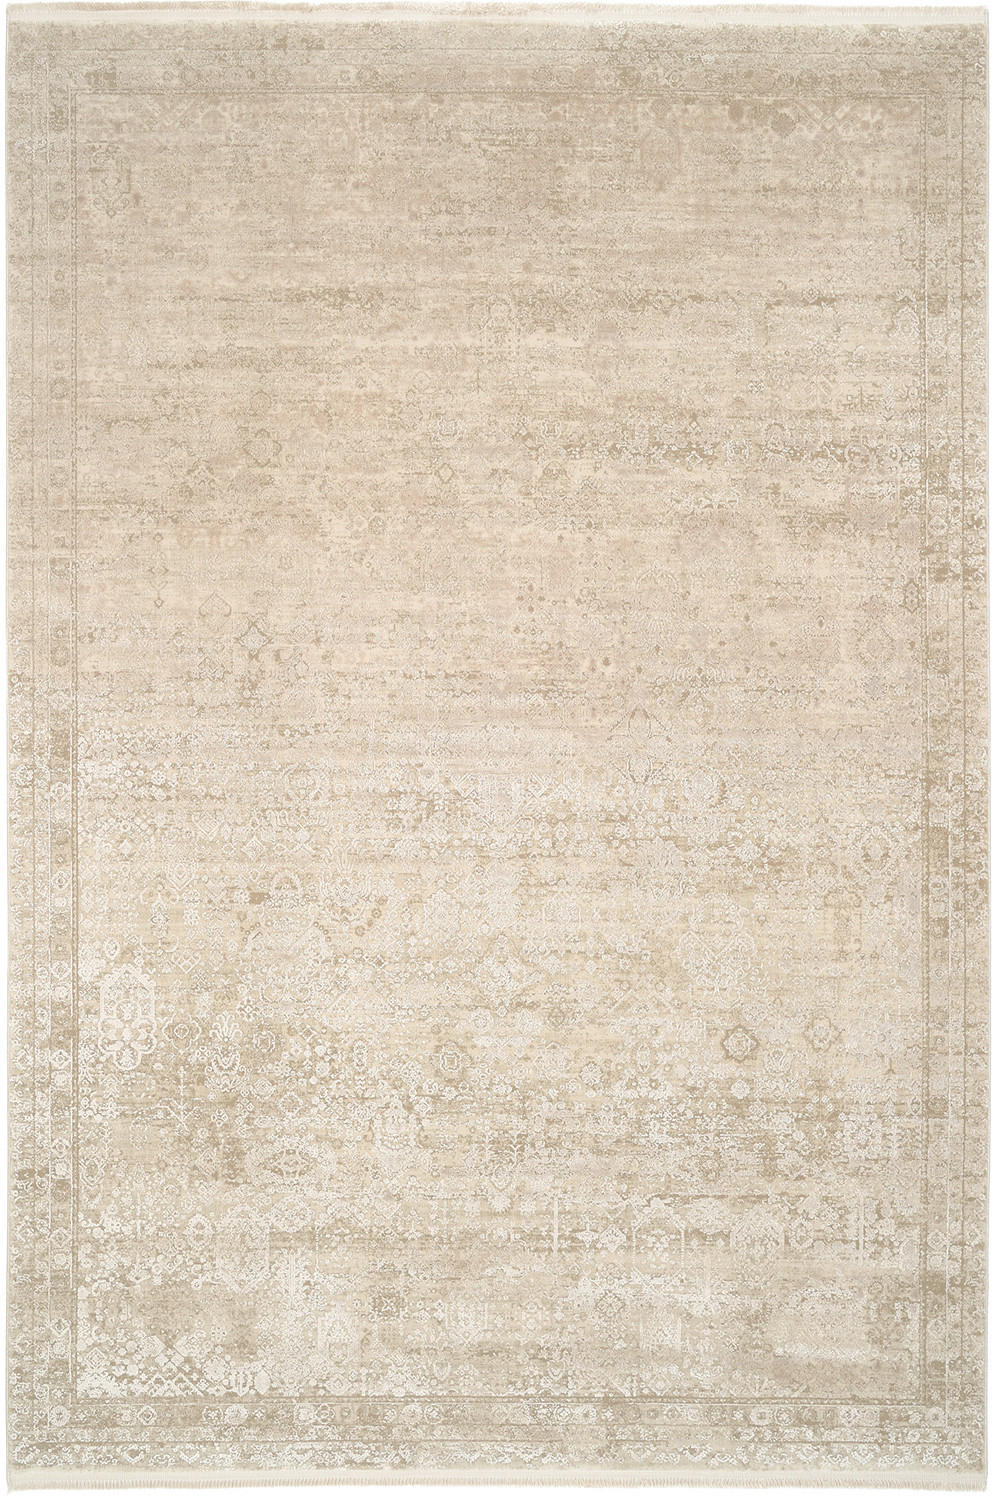 WEBTEPPICH 240/300 cm Colorè  - Beige, LIFESTYLE, Textil (240/300cm) - Dieter Knoll